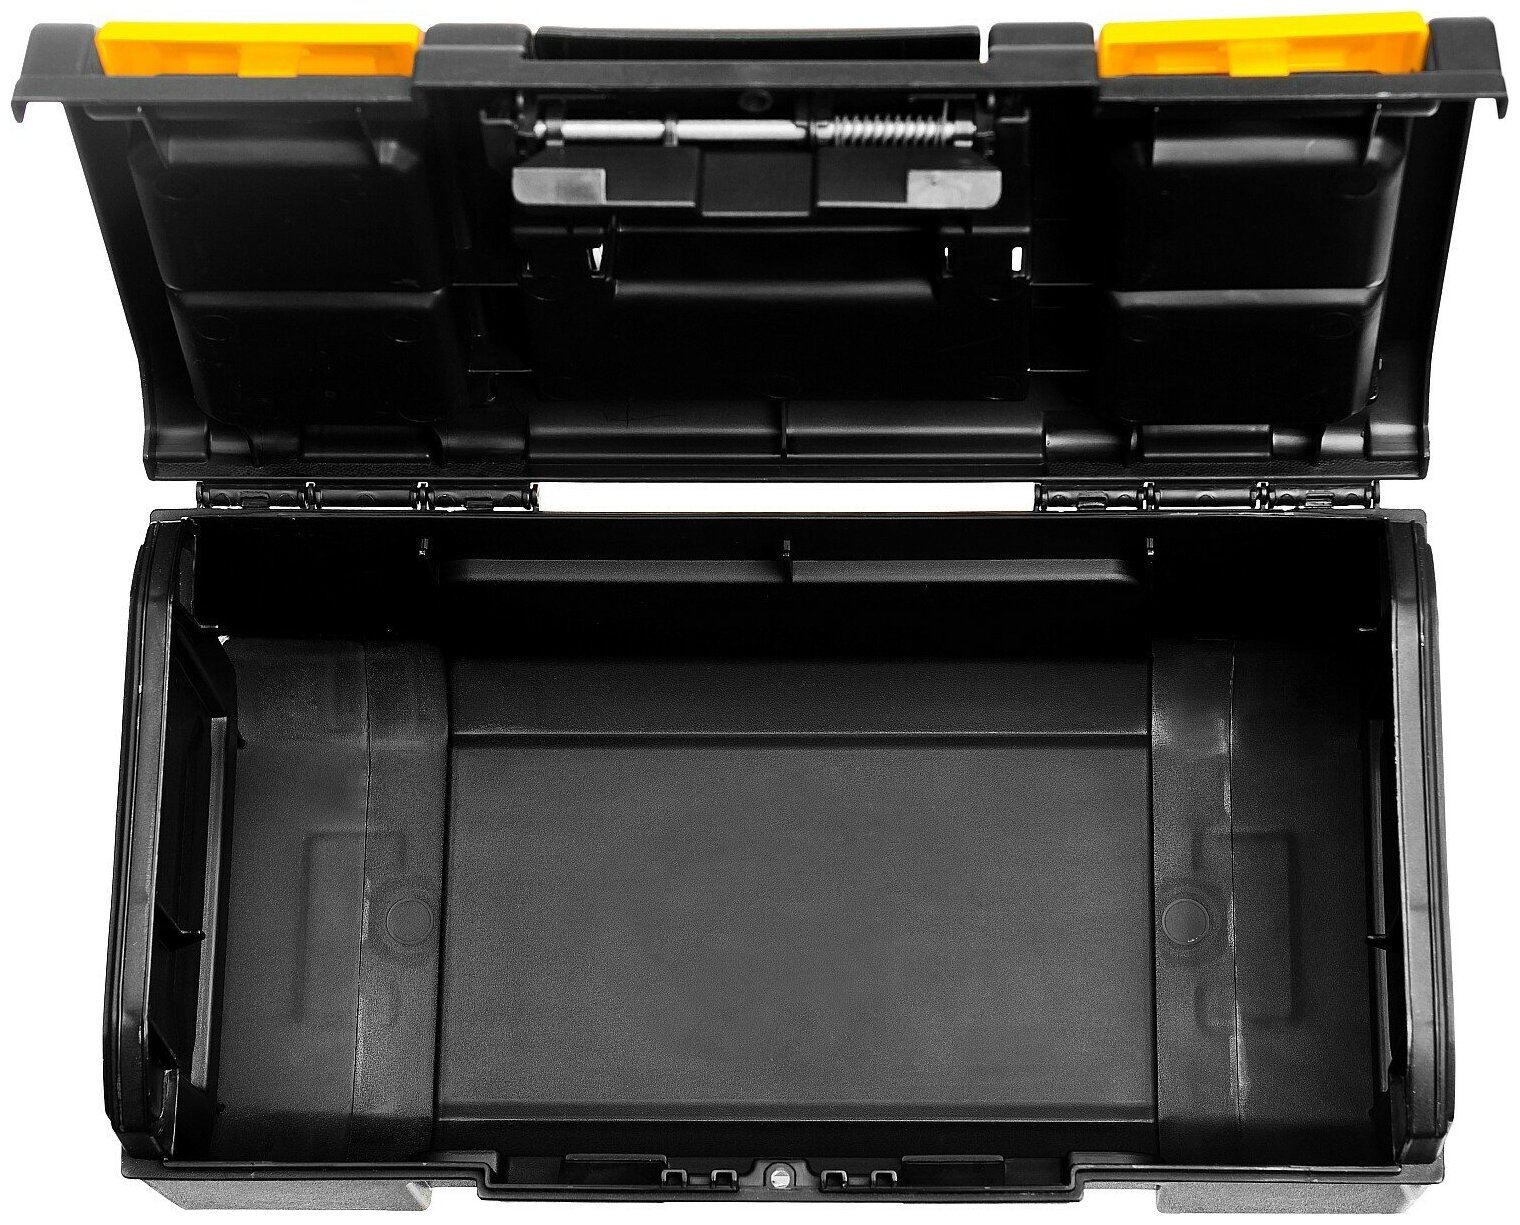 STAYER TOOLBOX-16, 390 х 210 х 160, пластиковый ящик для инструментов, Professional (38167-16)